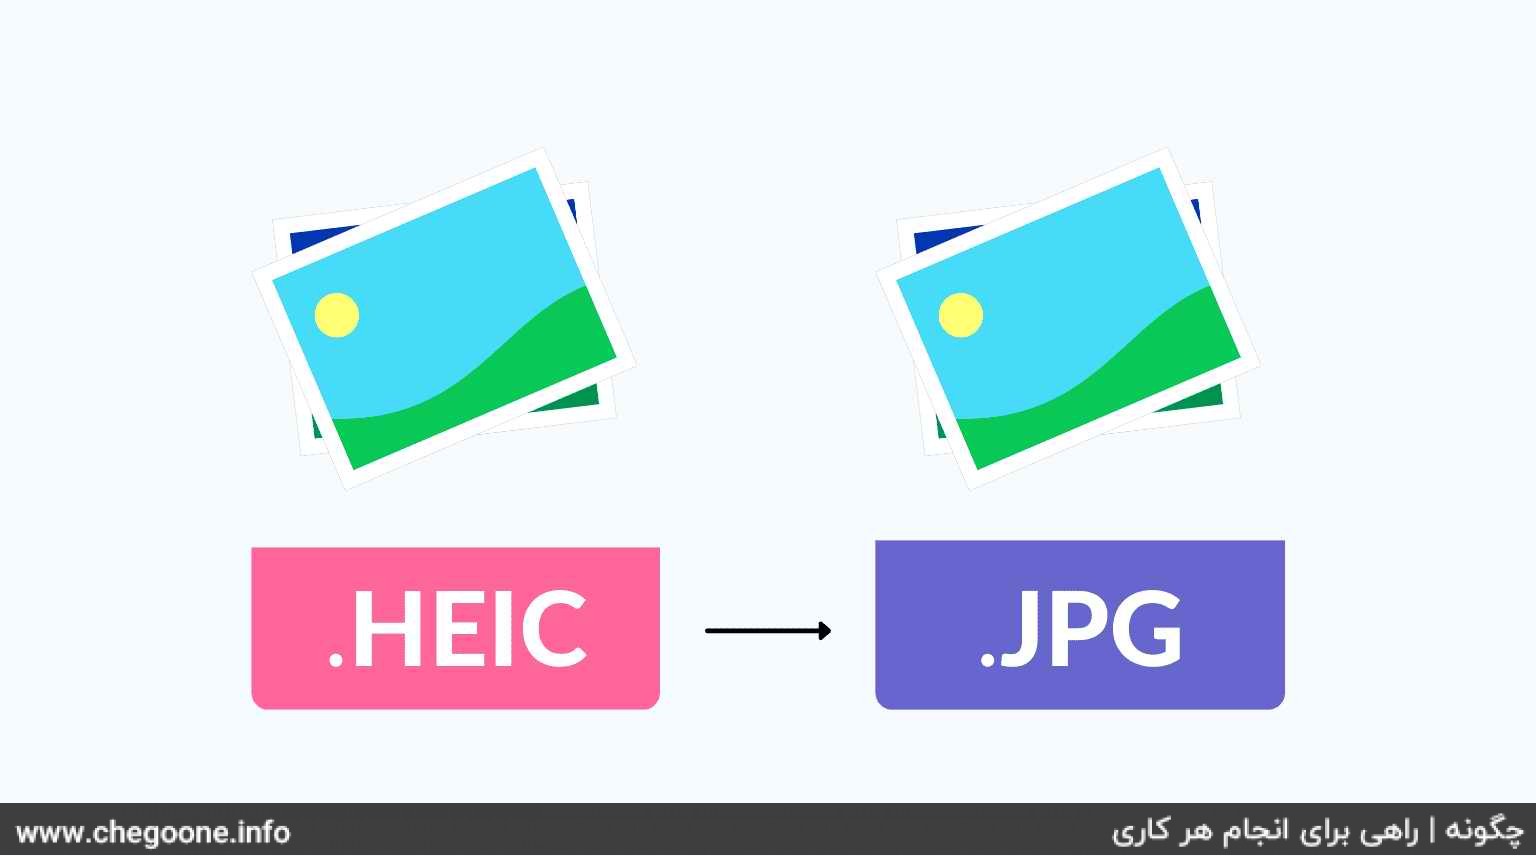 چگونه عکس HEIC را به JPG تبدیل کنیم